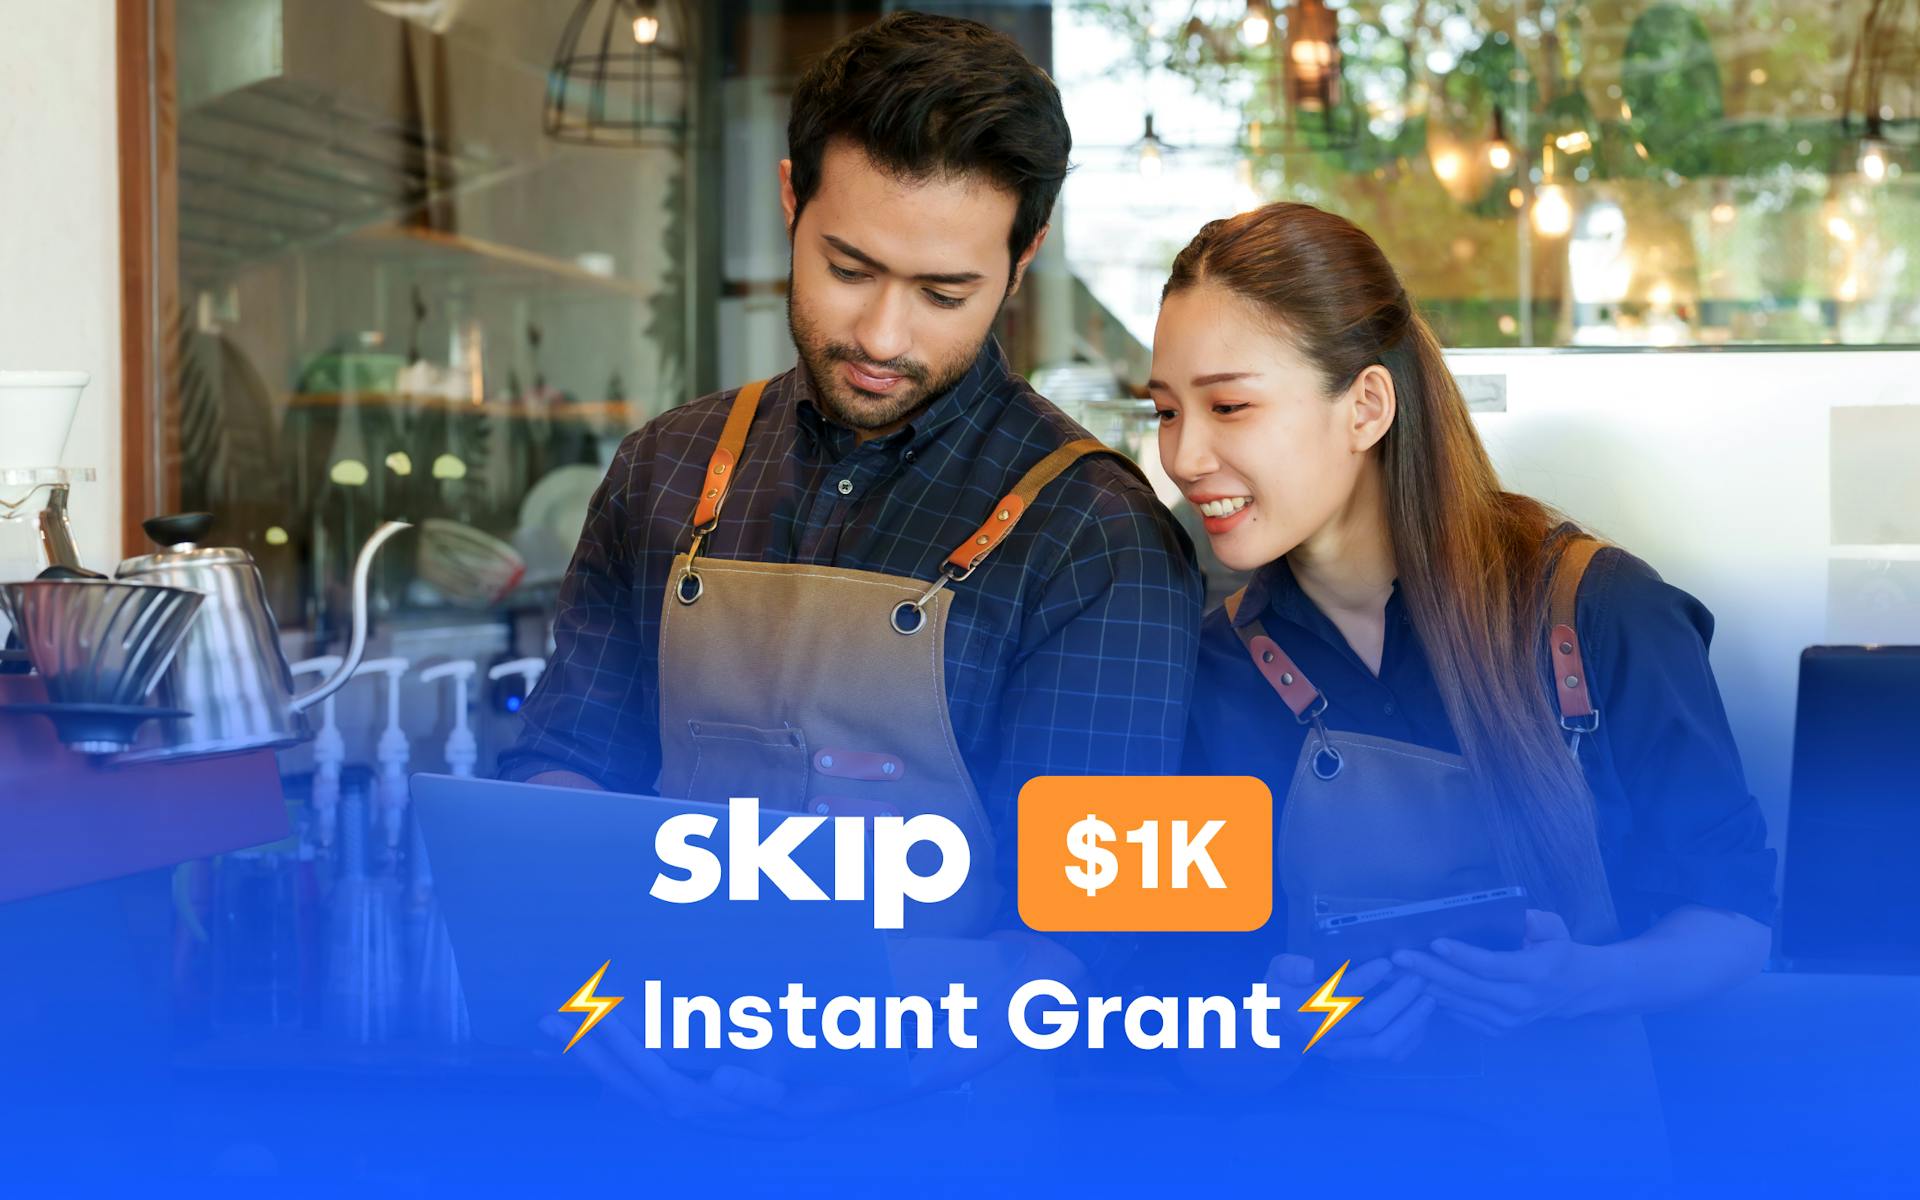 The Skip $1k Instant Grants #16 Image